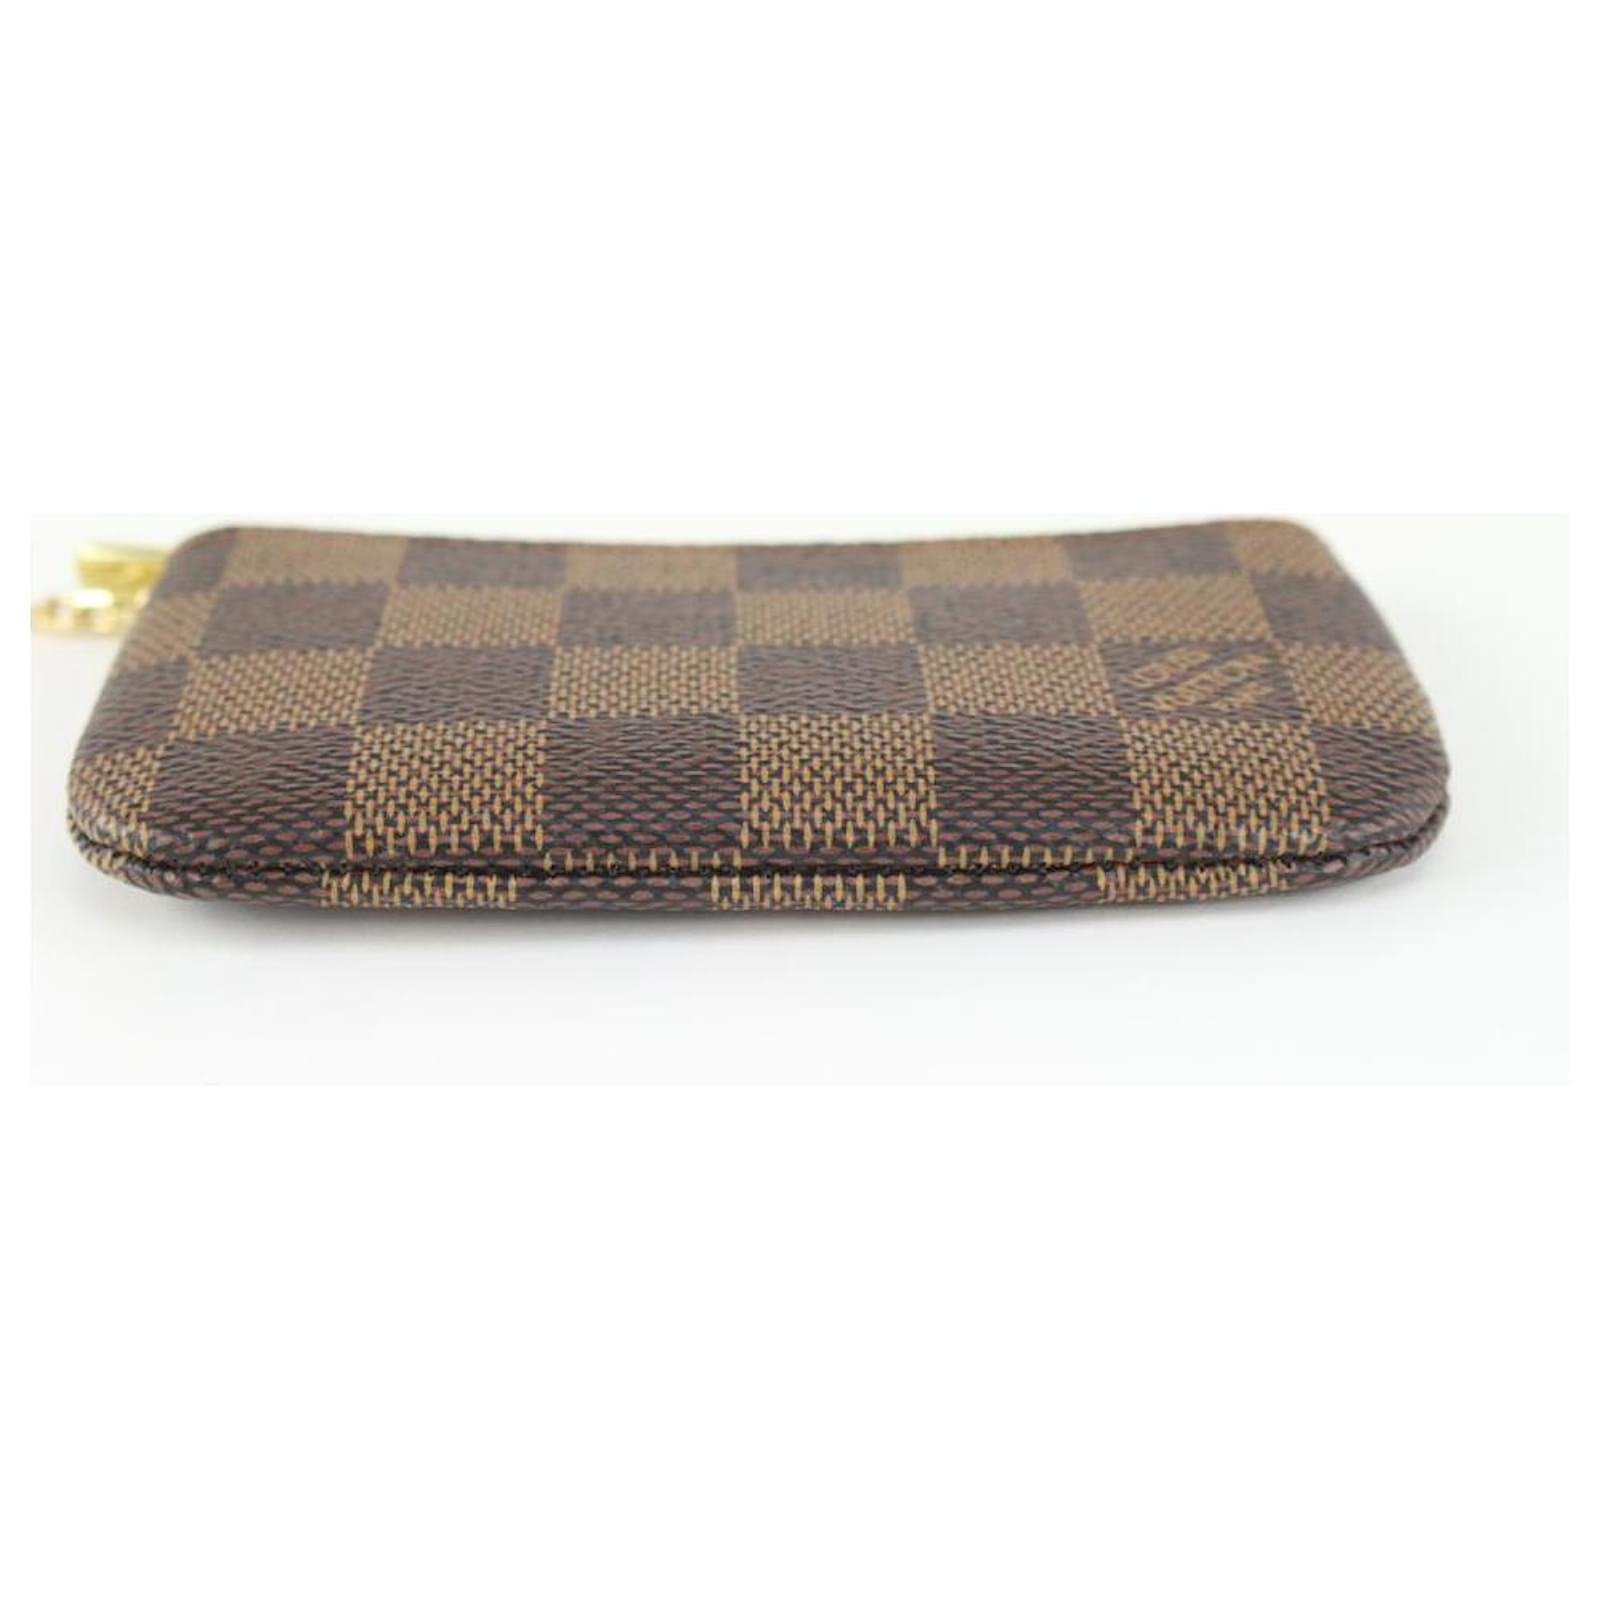 checkered coin purse keychain lv